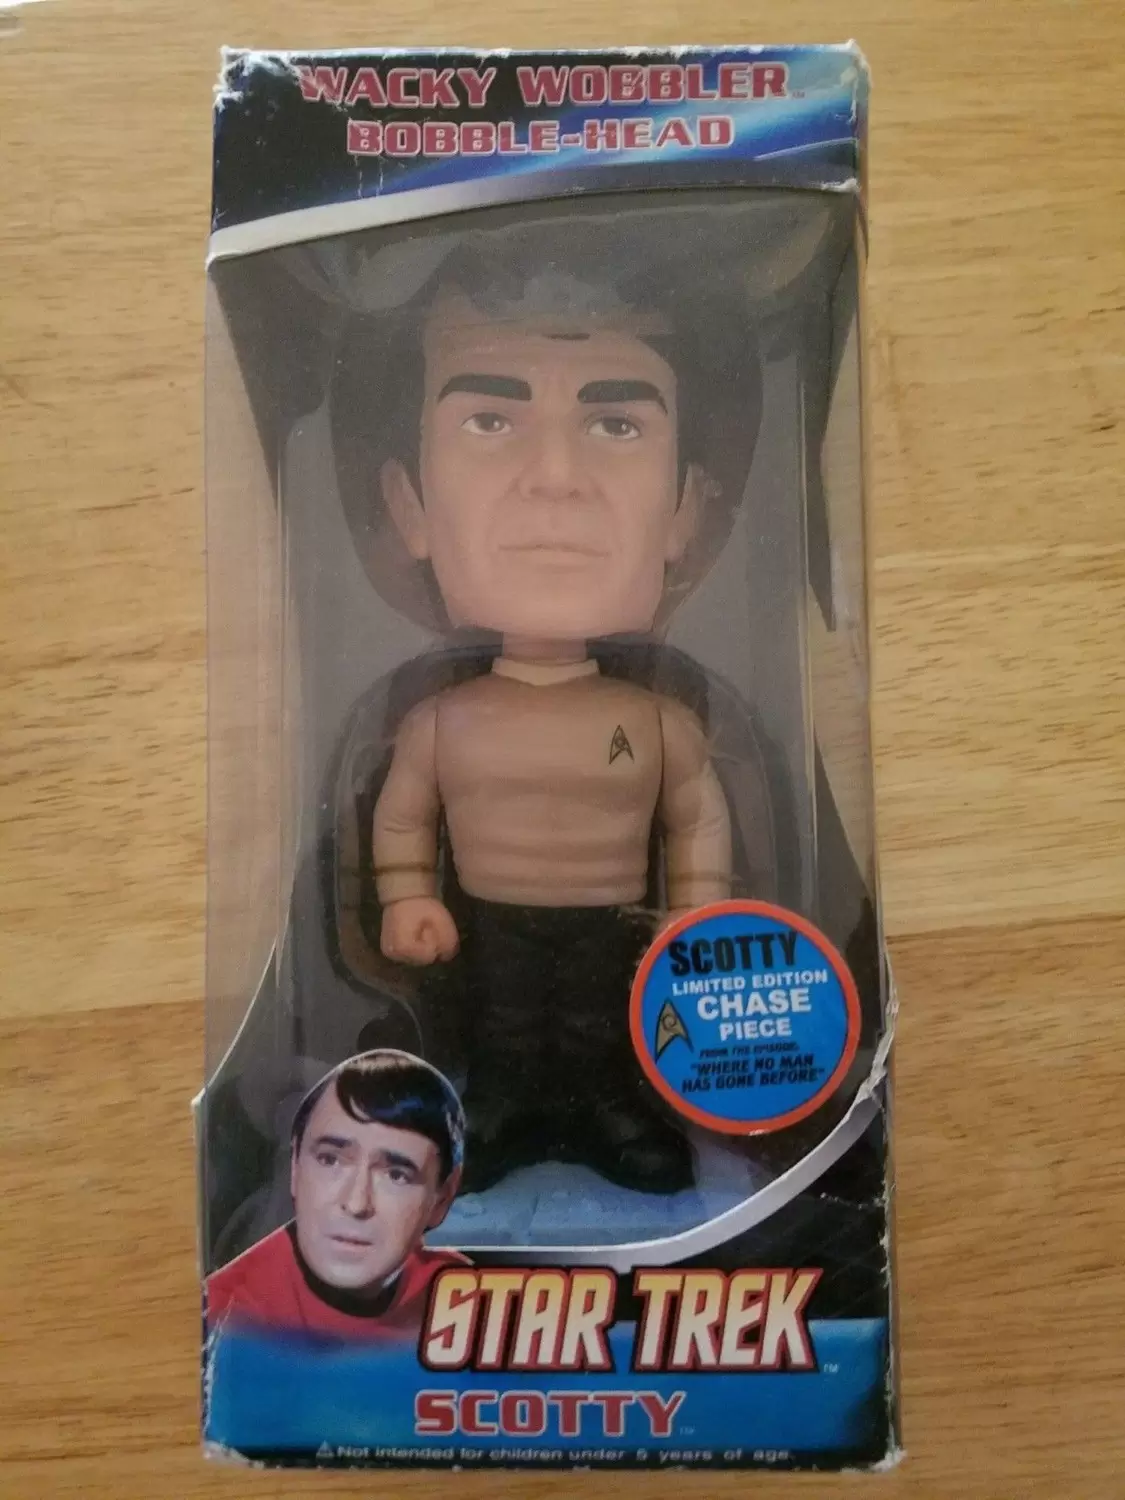 Wacky Wobbler Star Trek - Star Trek - Scotty Chase